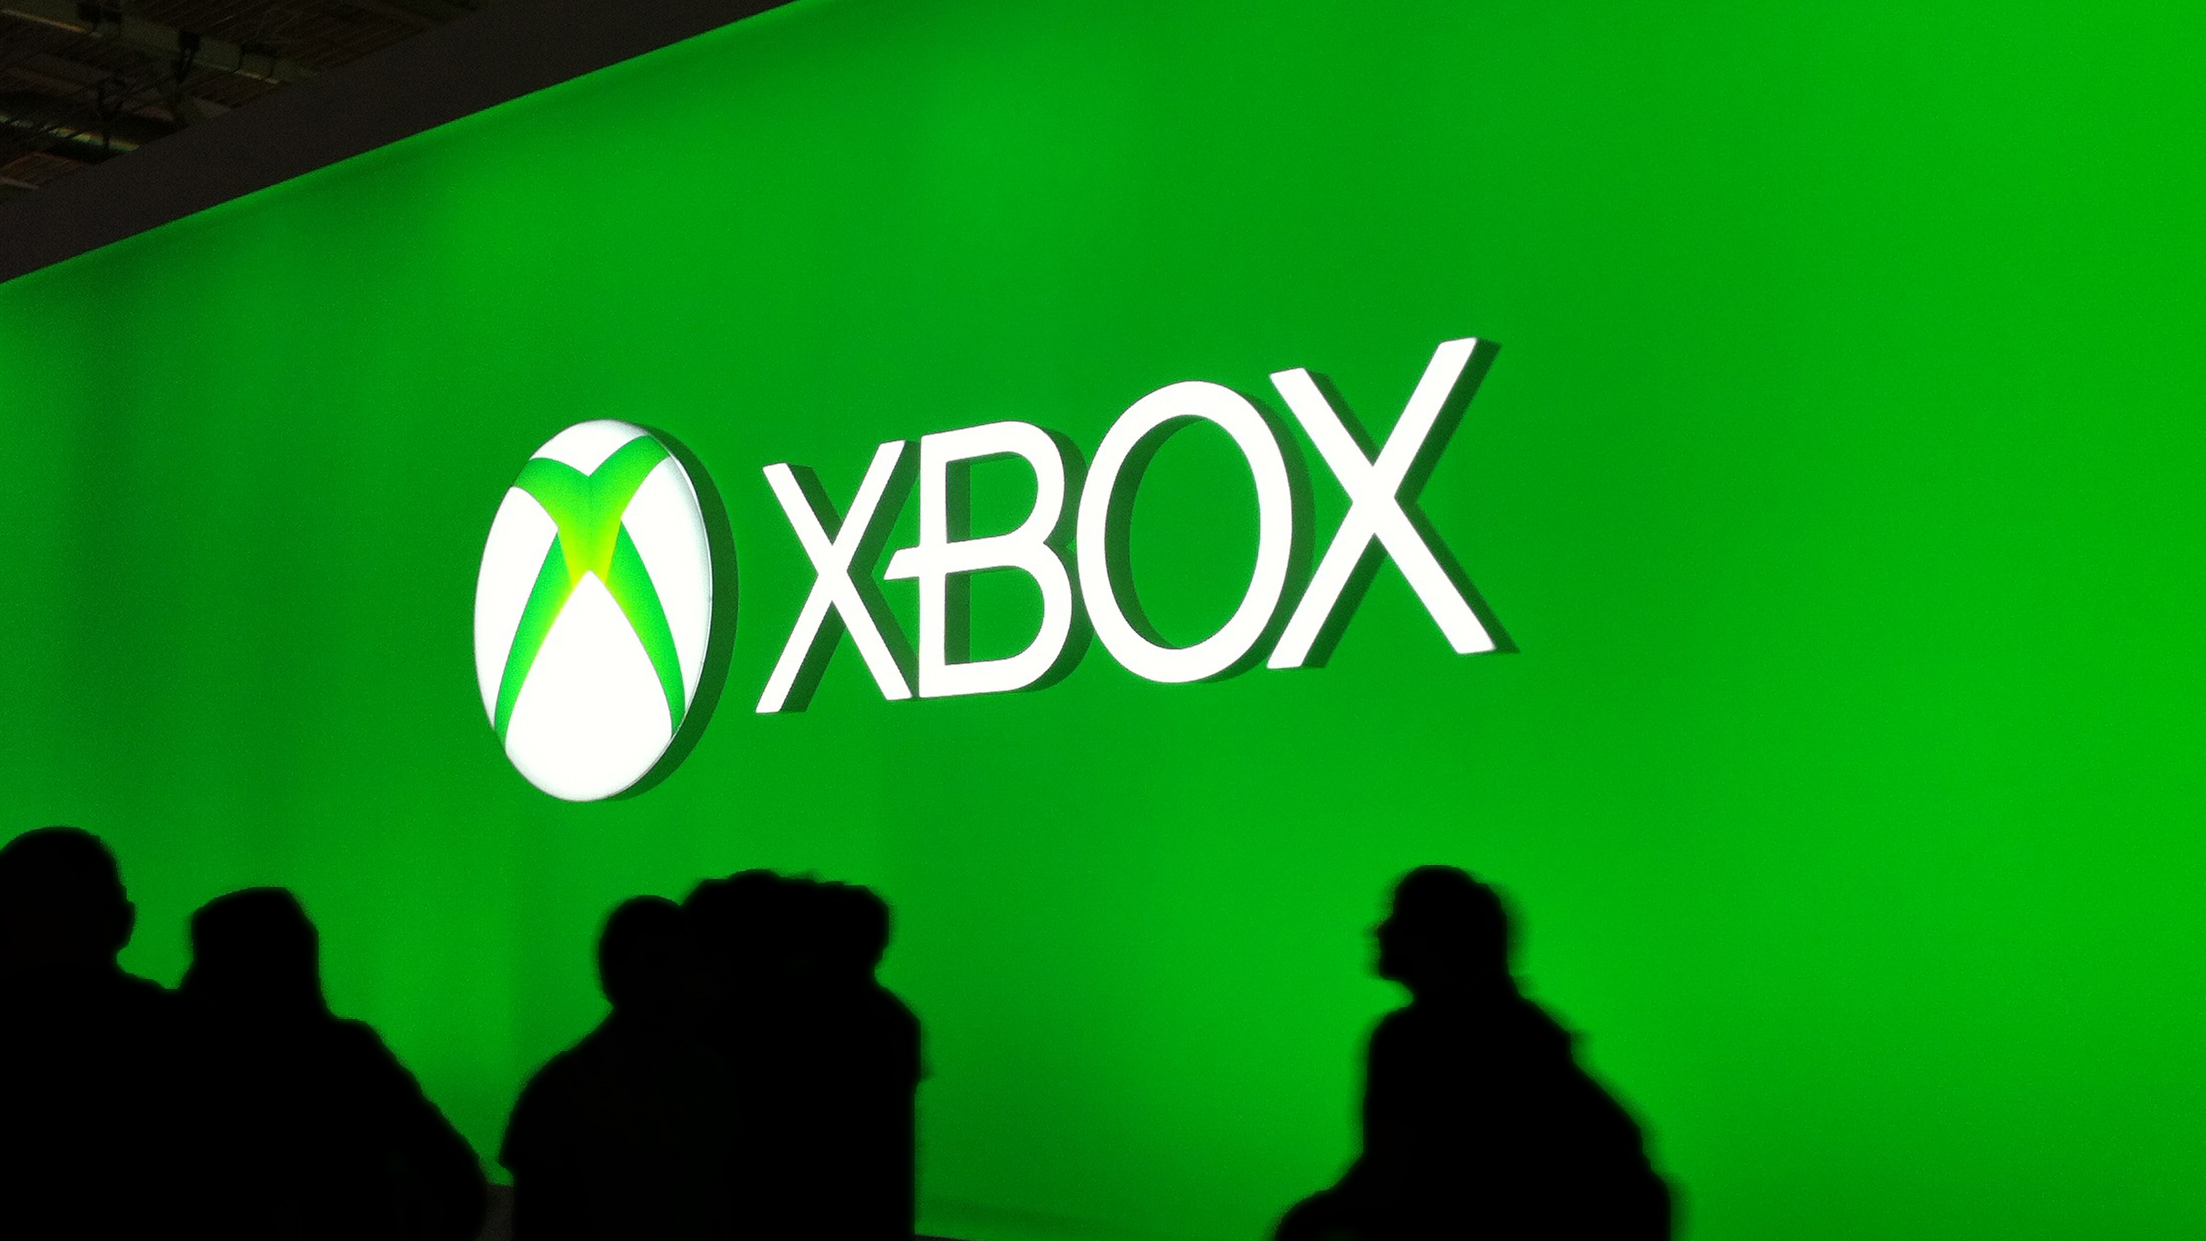 E3 Predictions for Xbox  Horizon zero dawn, Dawn news, Dawn